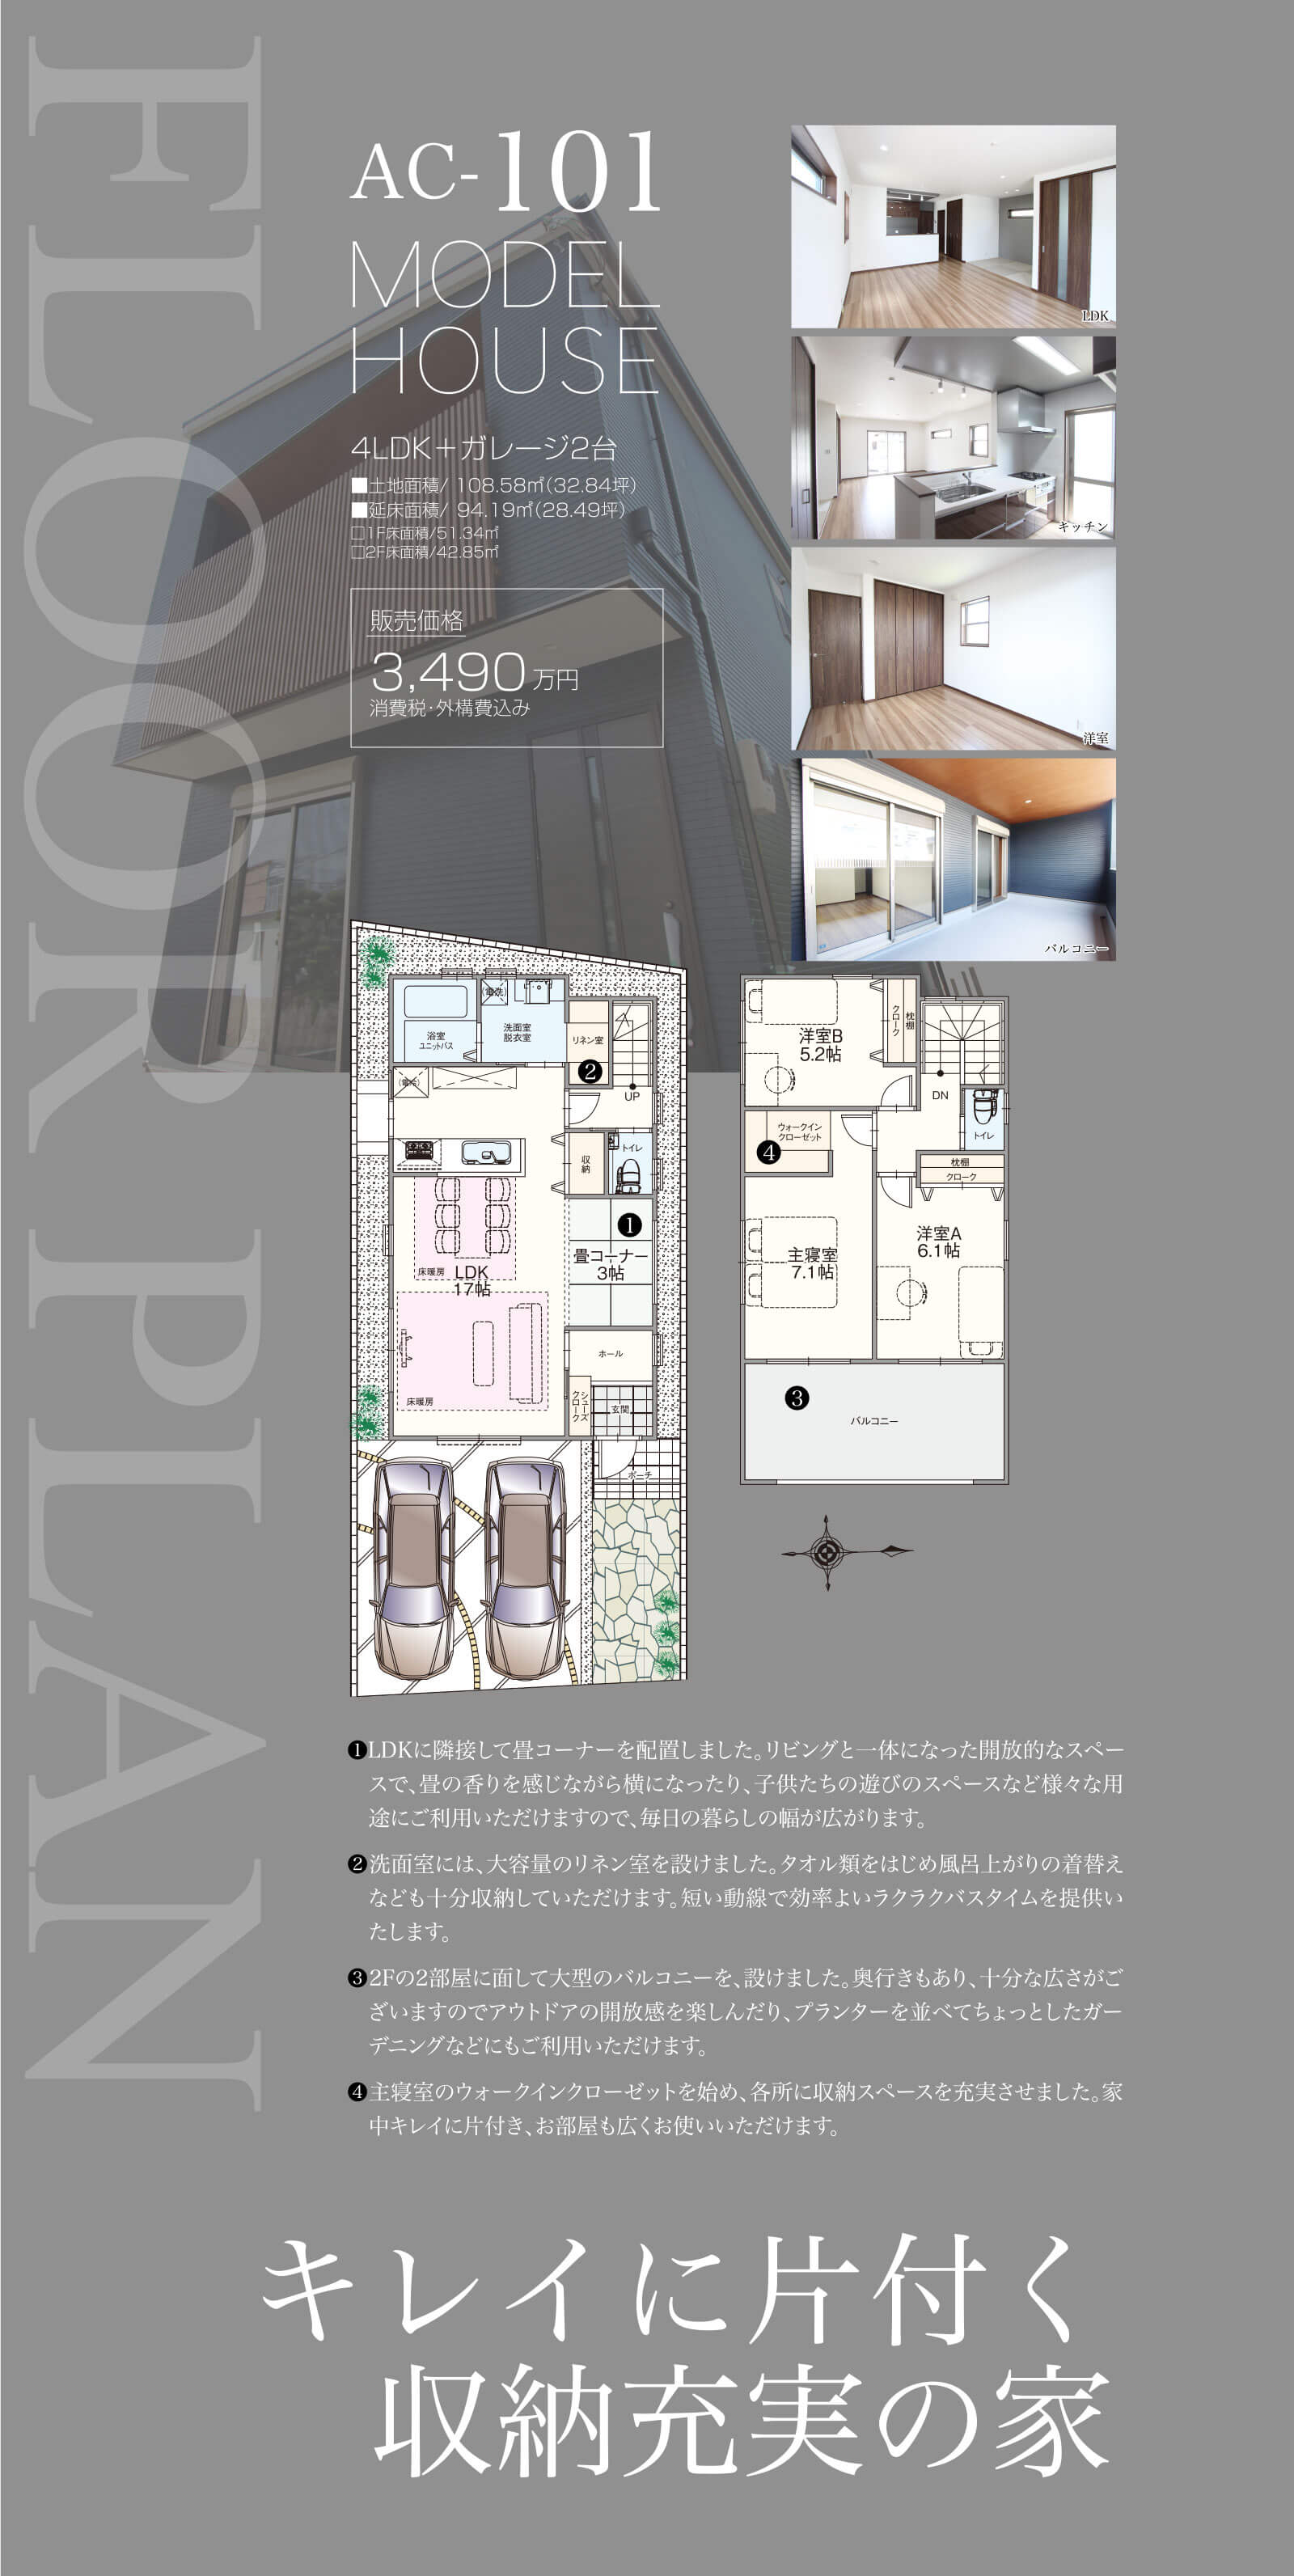 アスカーサ藤阪元町AC-101キレイに片付く収納充実の家の画像